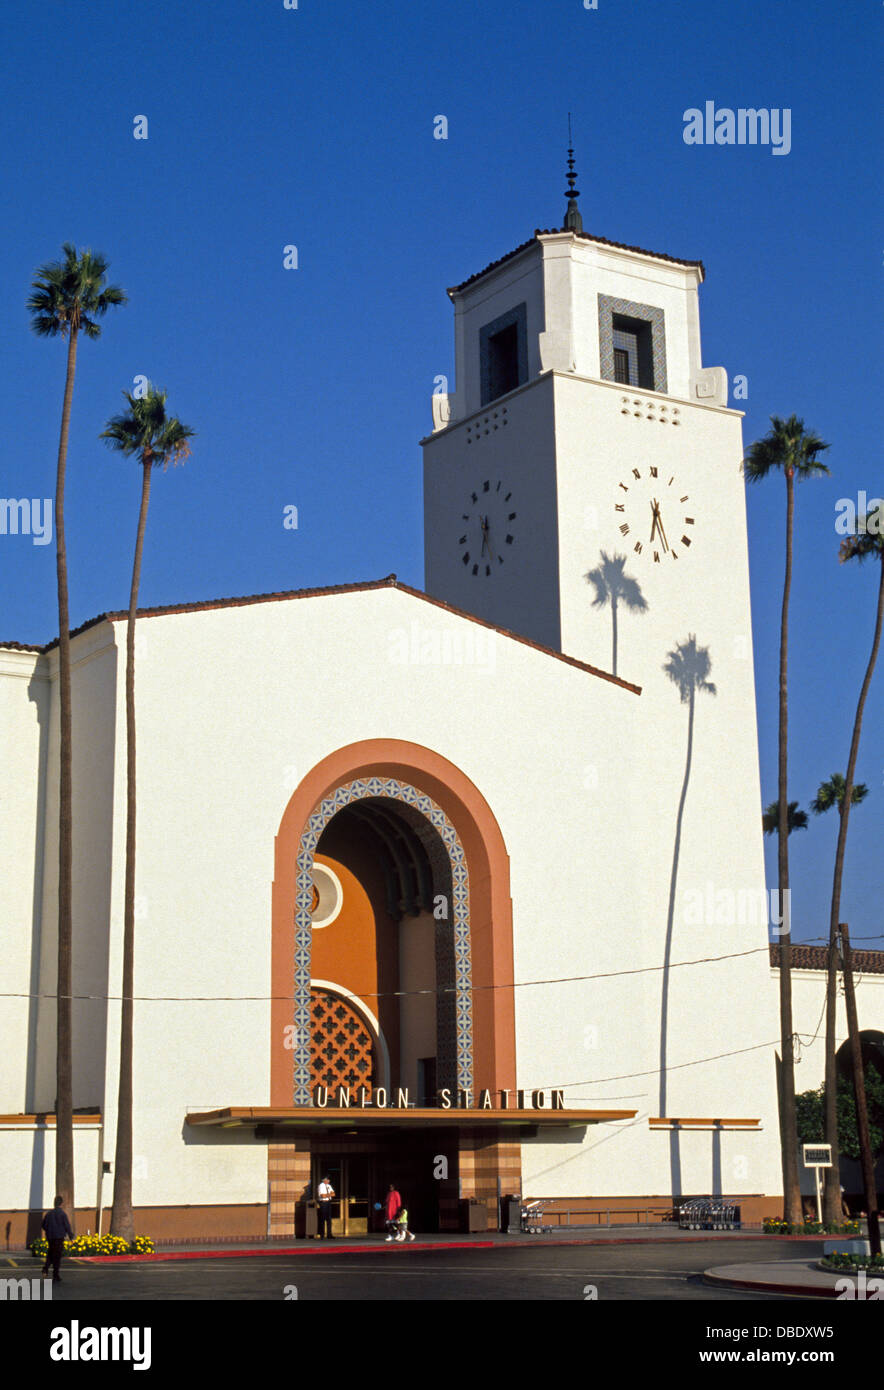 La gare Union de Los Angeles a ouvert ses portes en 1939 et sert maintenant plus de 60 000 passagers par jour sur l'ensemble du pays, de l'état et des trains locaux dans le sud de la Californie. Banque D'Images